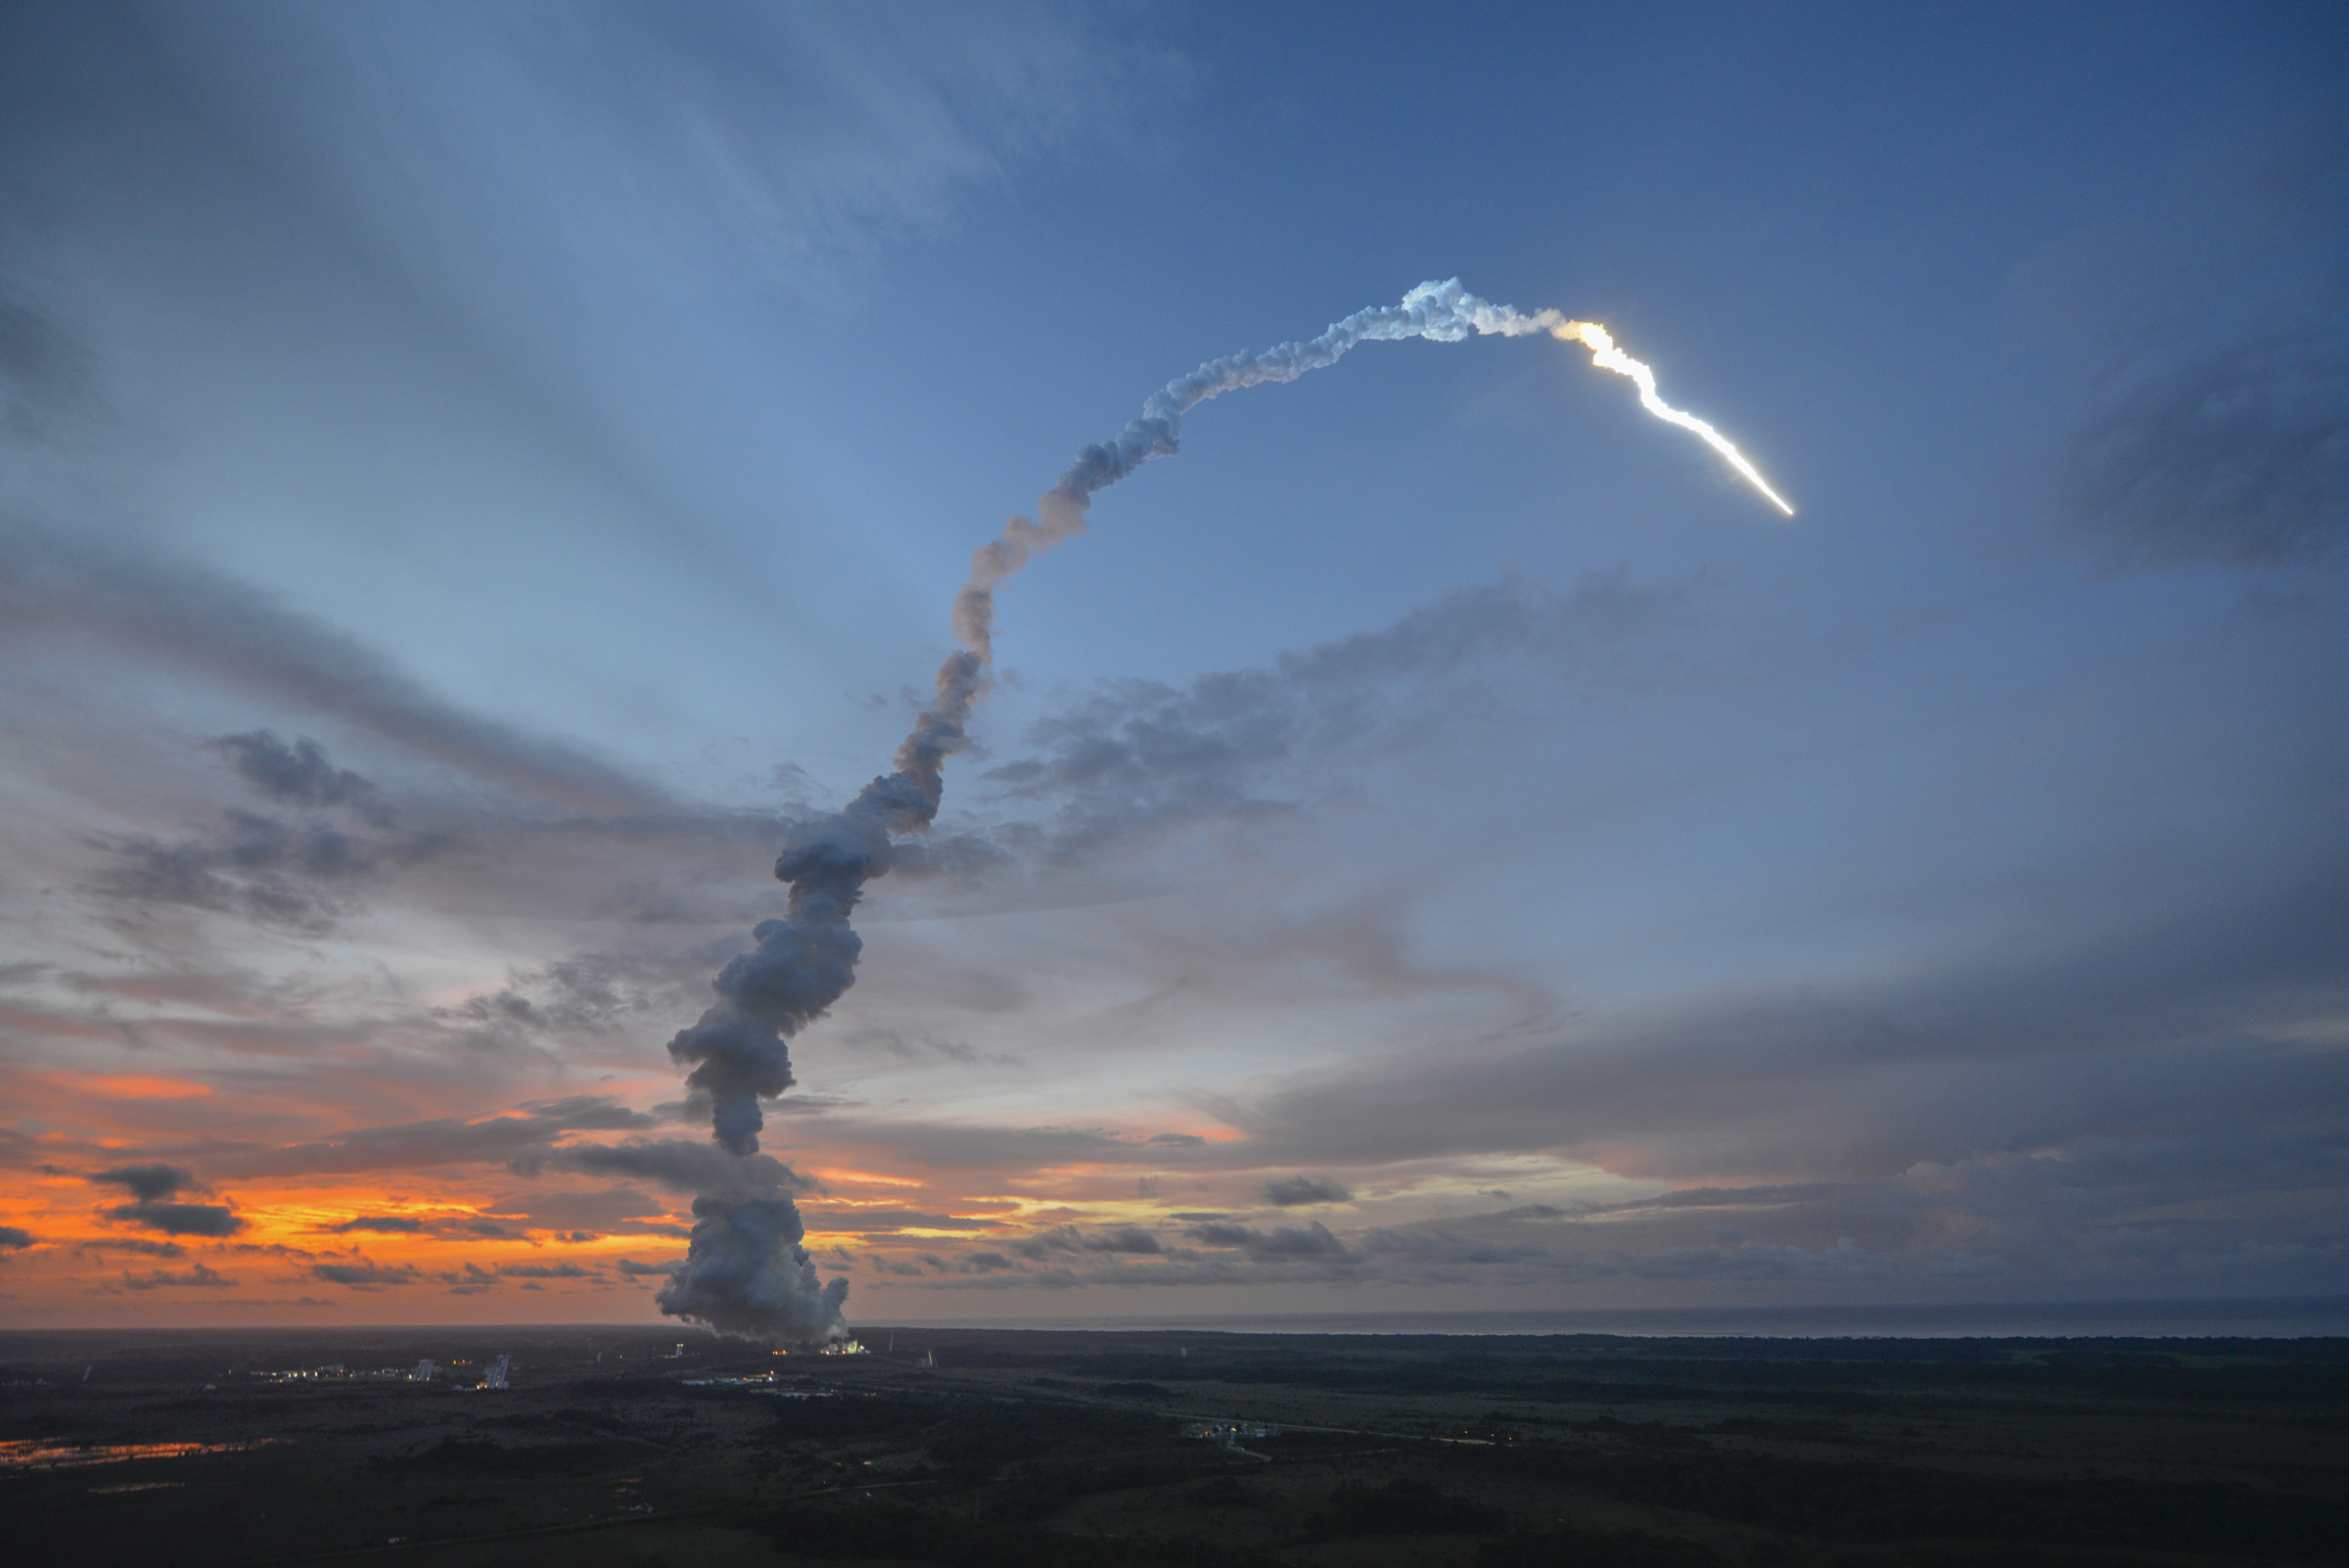 Le lancement ce soir, depuis l’Ensemble de lancement Ariane n°3 (ELA 3) à Kourou, sera le 215e pour une Ariane, toutes familles confondues, et le 71e pour une Ariane 5. Pour le décompte de l'année 2013, il viendra en numéro 4 pour une 5 ECA et en position 5 pour une Ariane, une 5 ES ayant lancé vers l'ISS l'ATV-4 Albert Einstein en juin dernier. © Esa, S. Corvaja